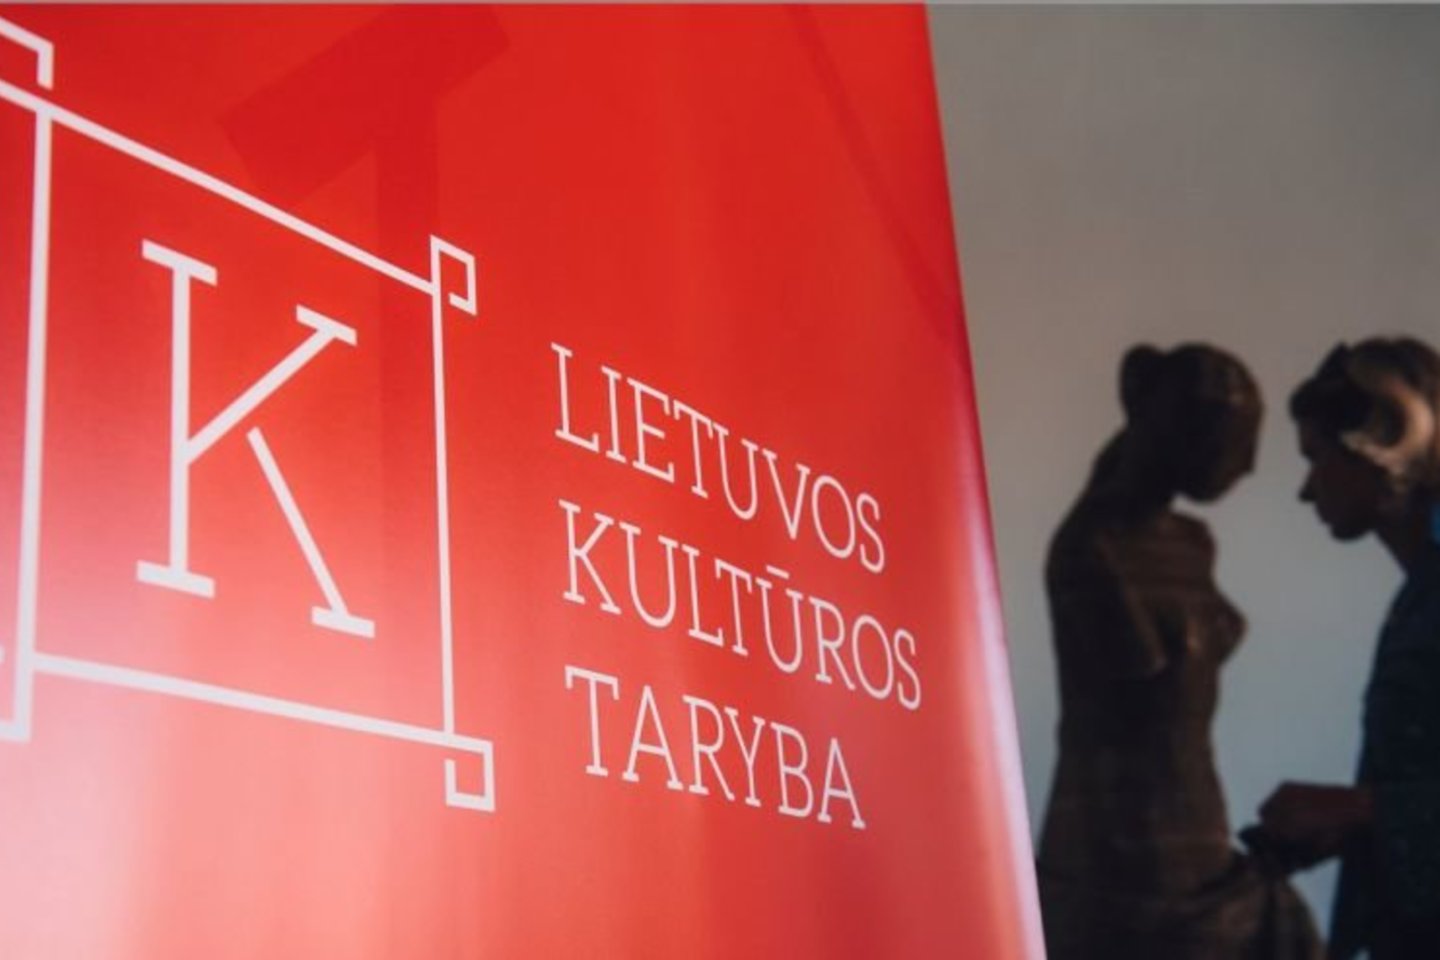 Naujos sudėties Lietuvos kultūros taryba pradės veikti nuo 2021 metų birželio 1 dienos.<br>Nuotr. iš LKT archyvo